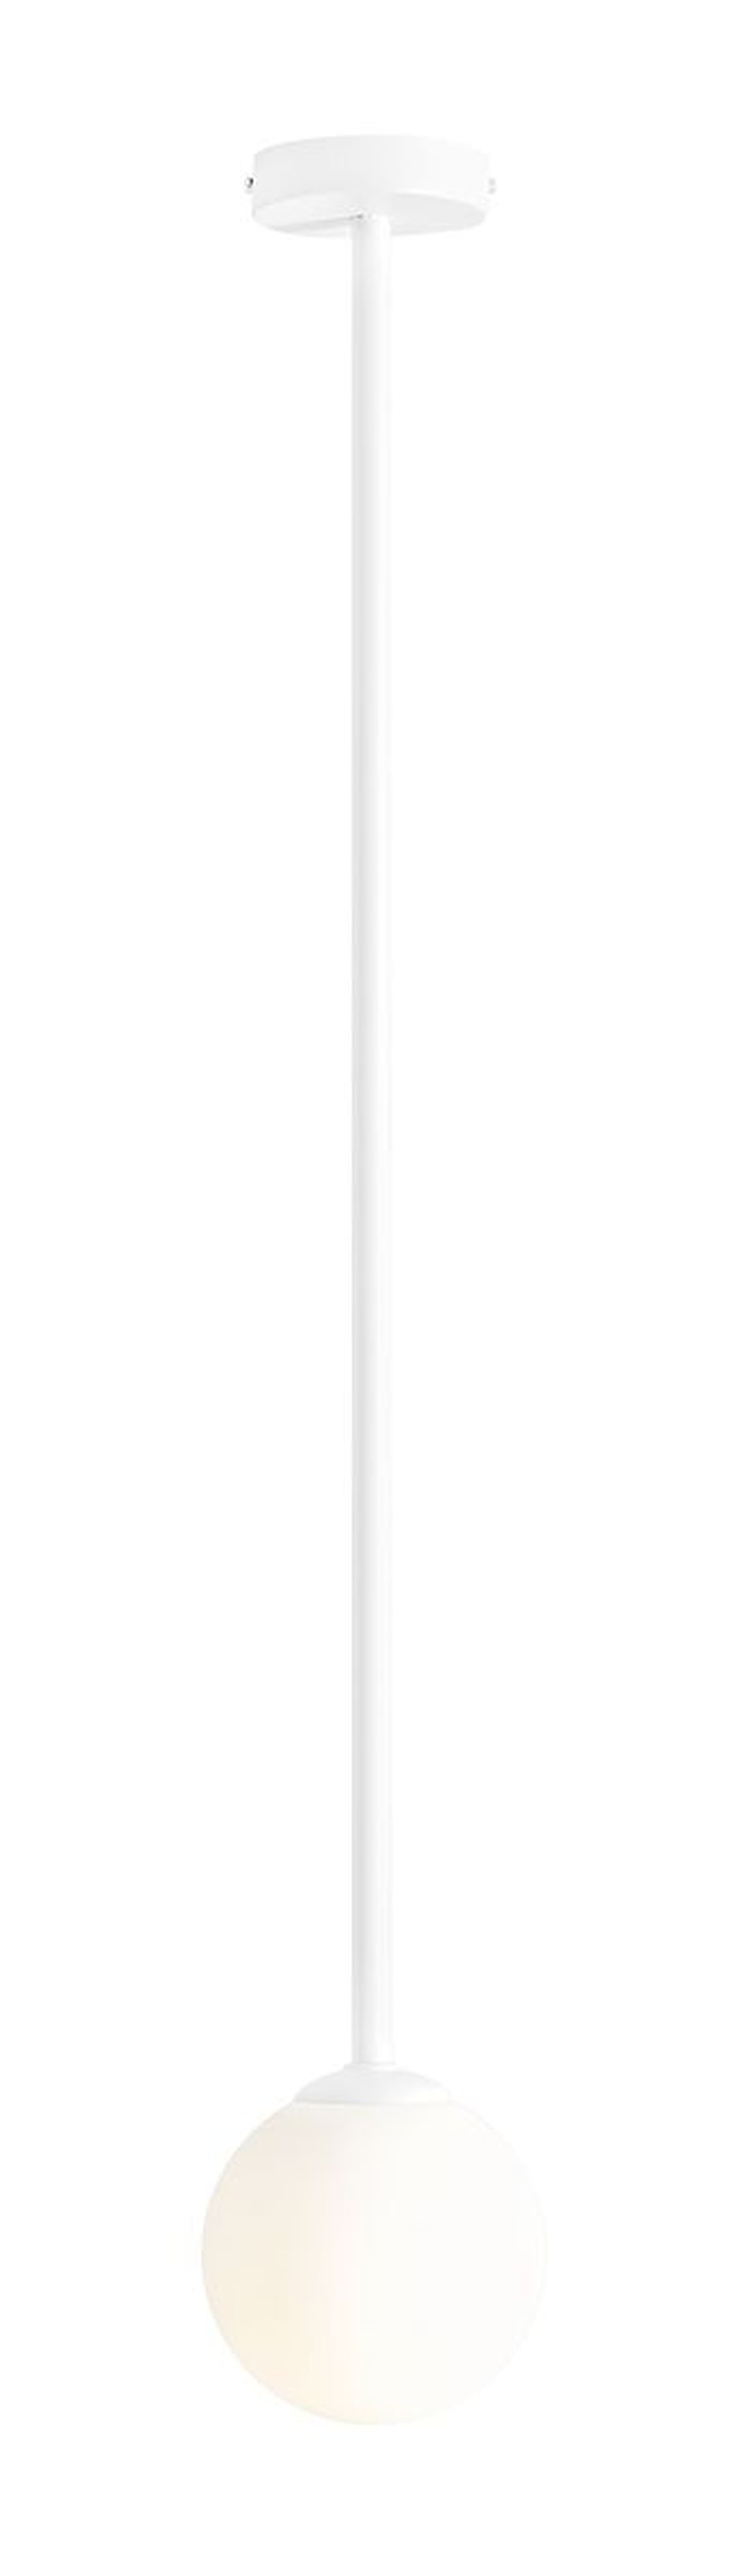 Runde Deckenlampe blendarm Glaskugel Weiß E14 H:92 cm